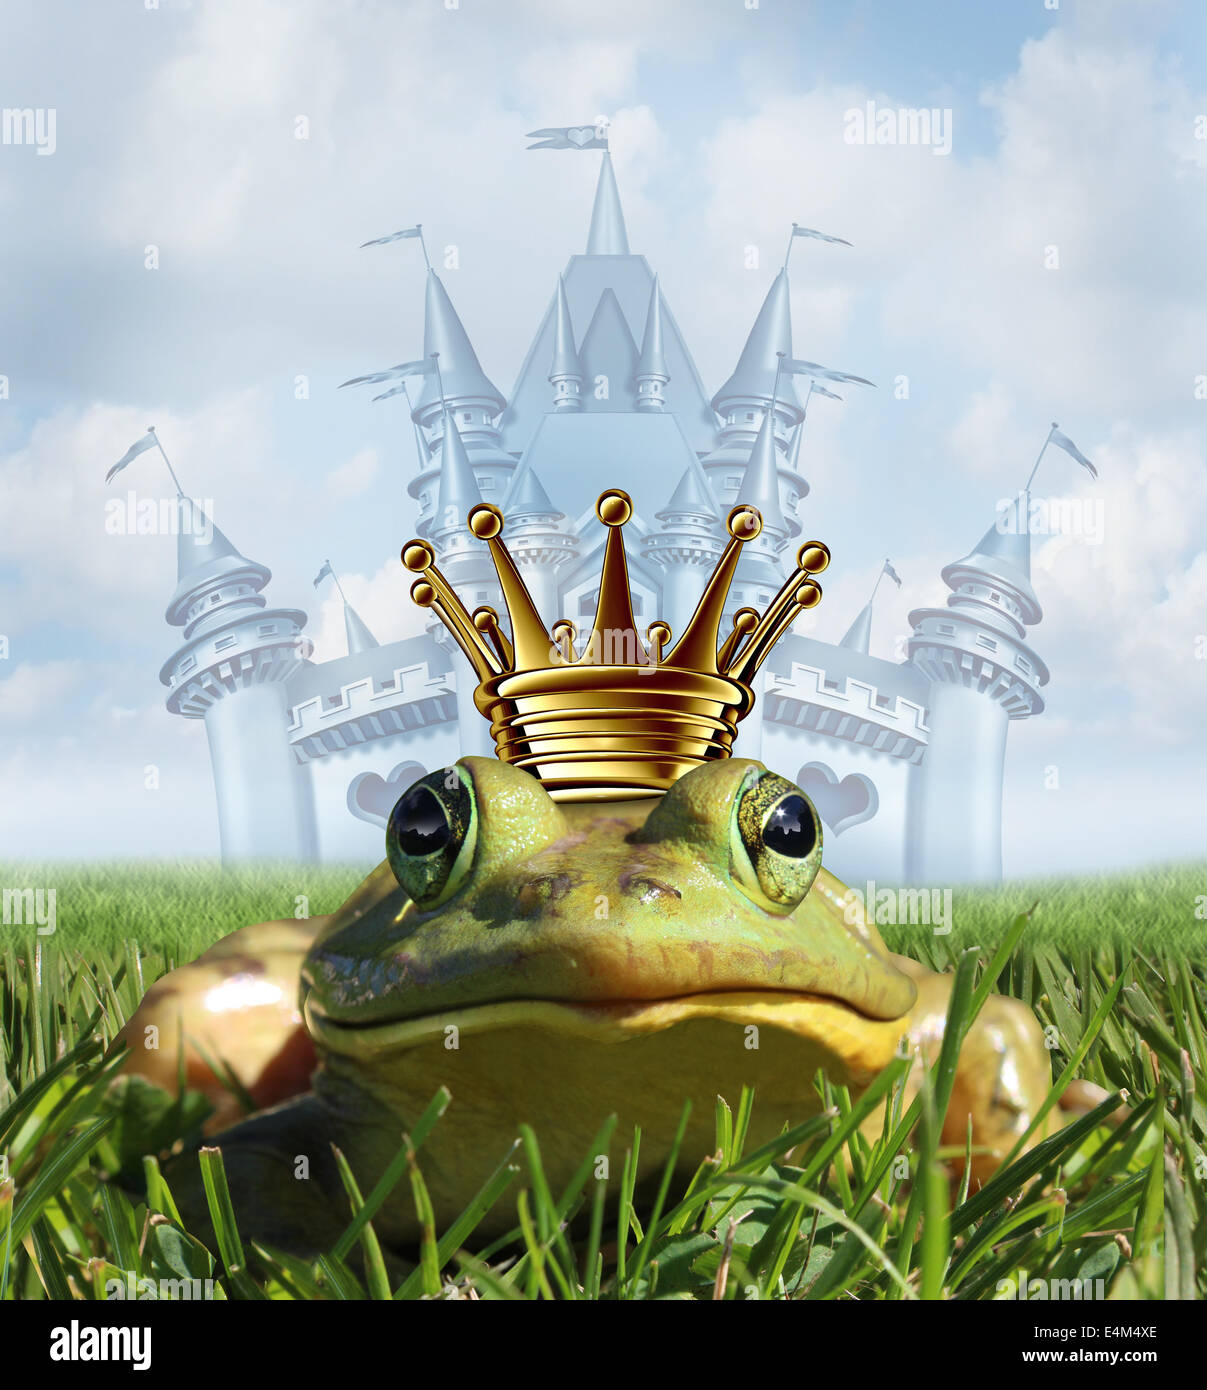 Frosch Prinz Schloss Konzept mit Goldkrone das Märchen Symbol der Hoffnung Romantik und Veränderung in eine Transformation von ein Amphibium, gut aussehend Lizenzgebühren nach einer Prinzessin Kuss. Stockfoto